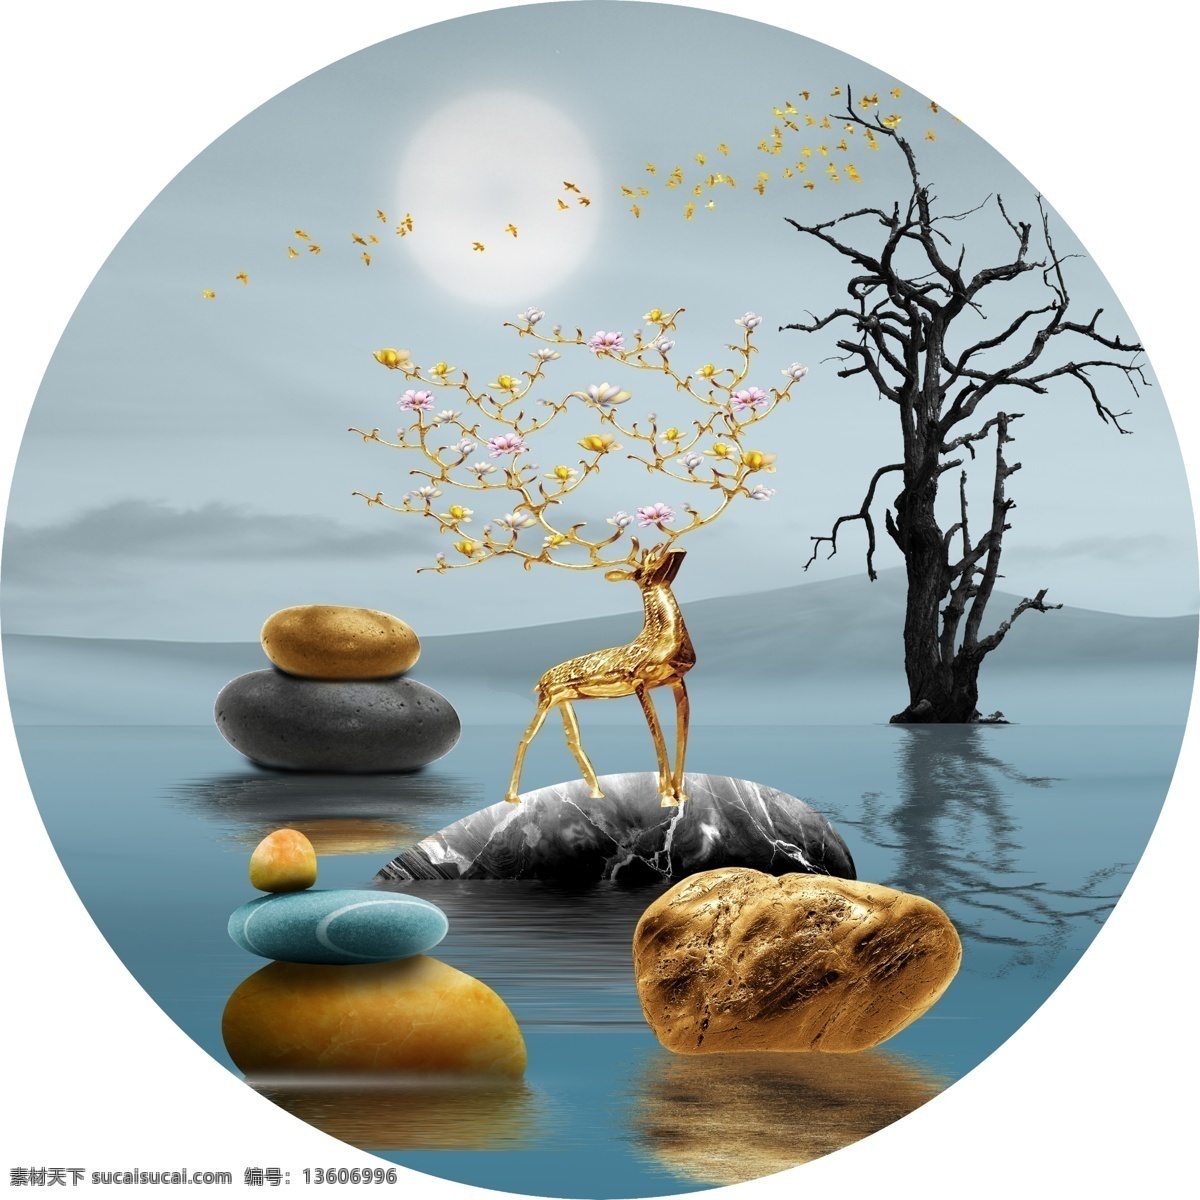 金鹿夜景图片 金鹿 夜景 湖色 湖水月亮 大石头 文化艺术 传统文化